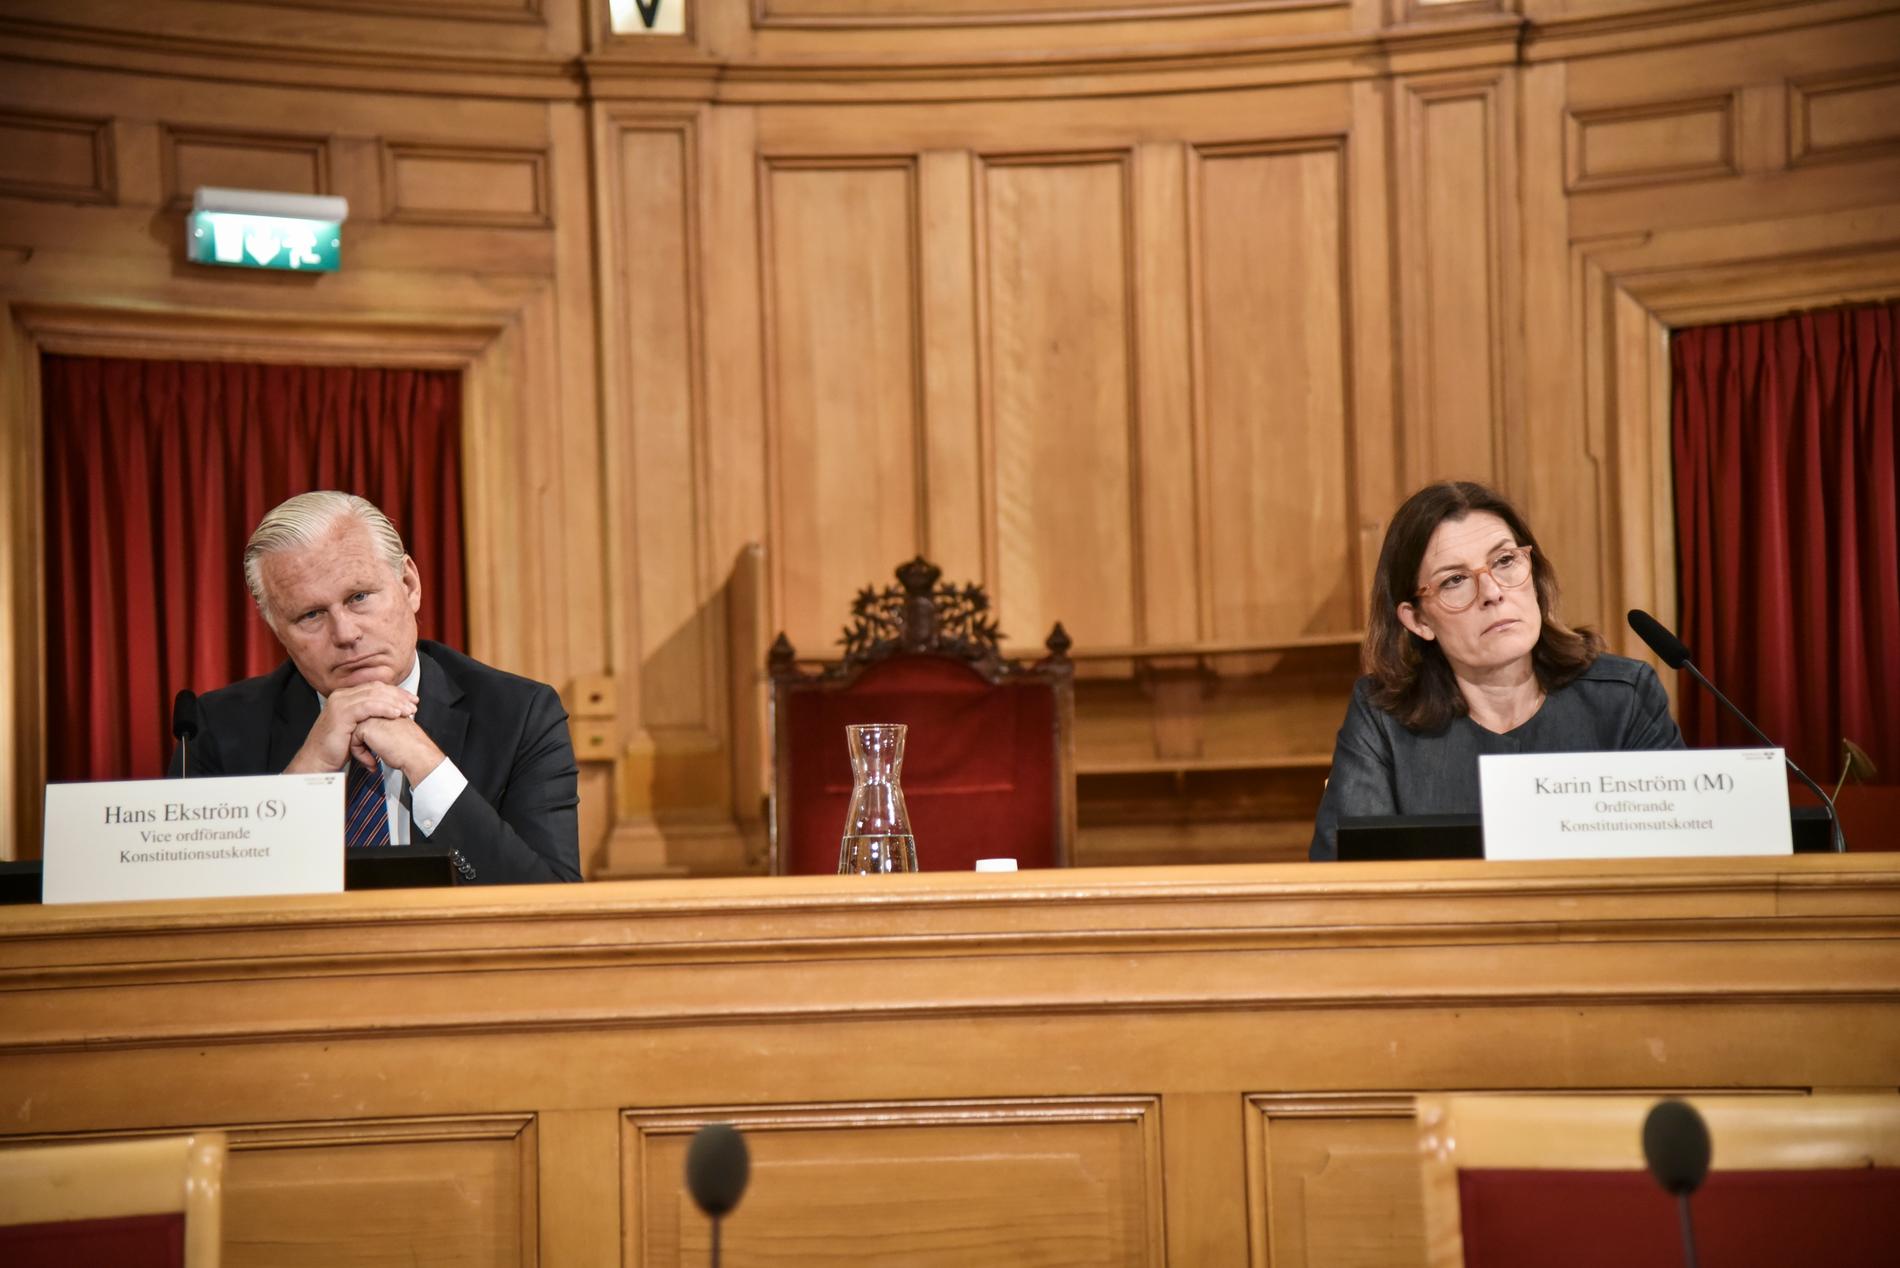 "Utskottet anser att regeringen brustit i hanteringen av pandemin. Det är allvarligt", säger KU:s ordförande Karin Enström (M). Till vänster vice ordförande Hans Ekström (S).